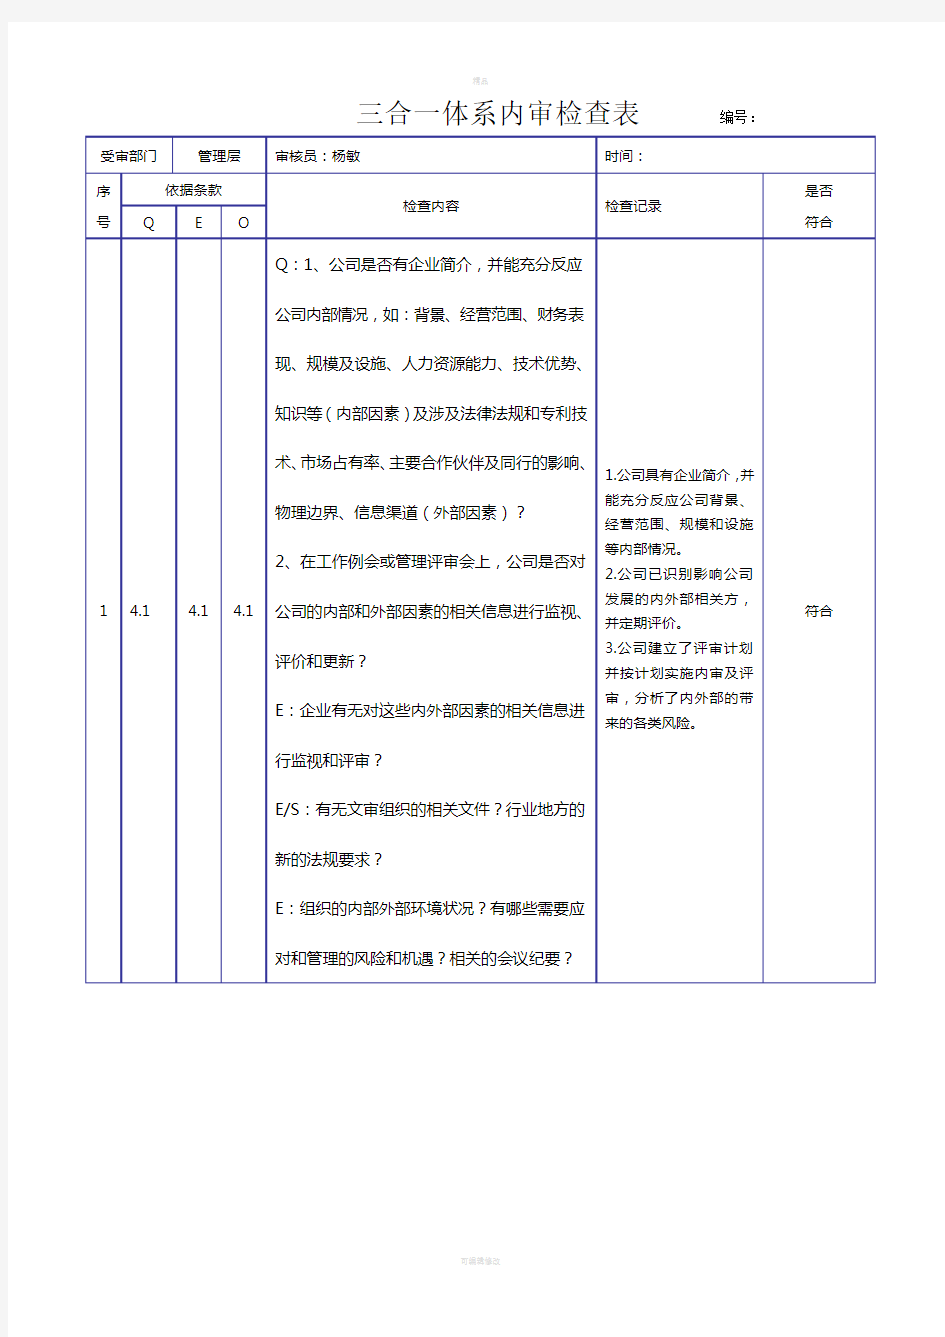 新版三合一体系内审检查表(2018)